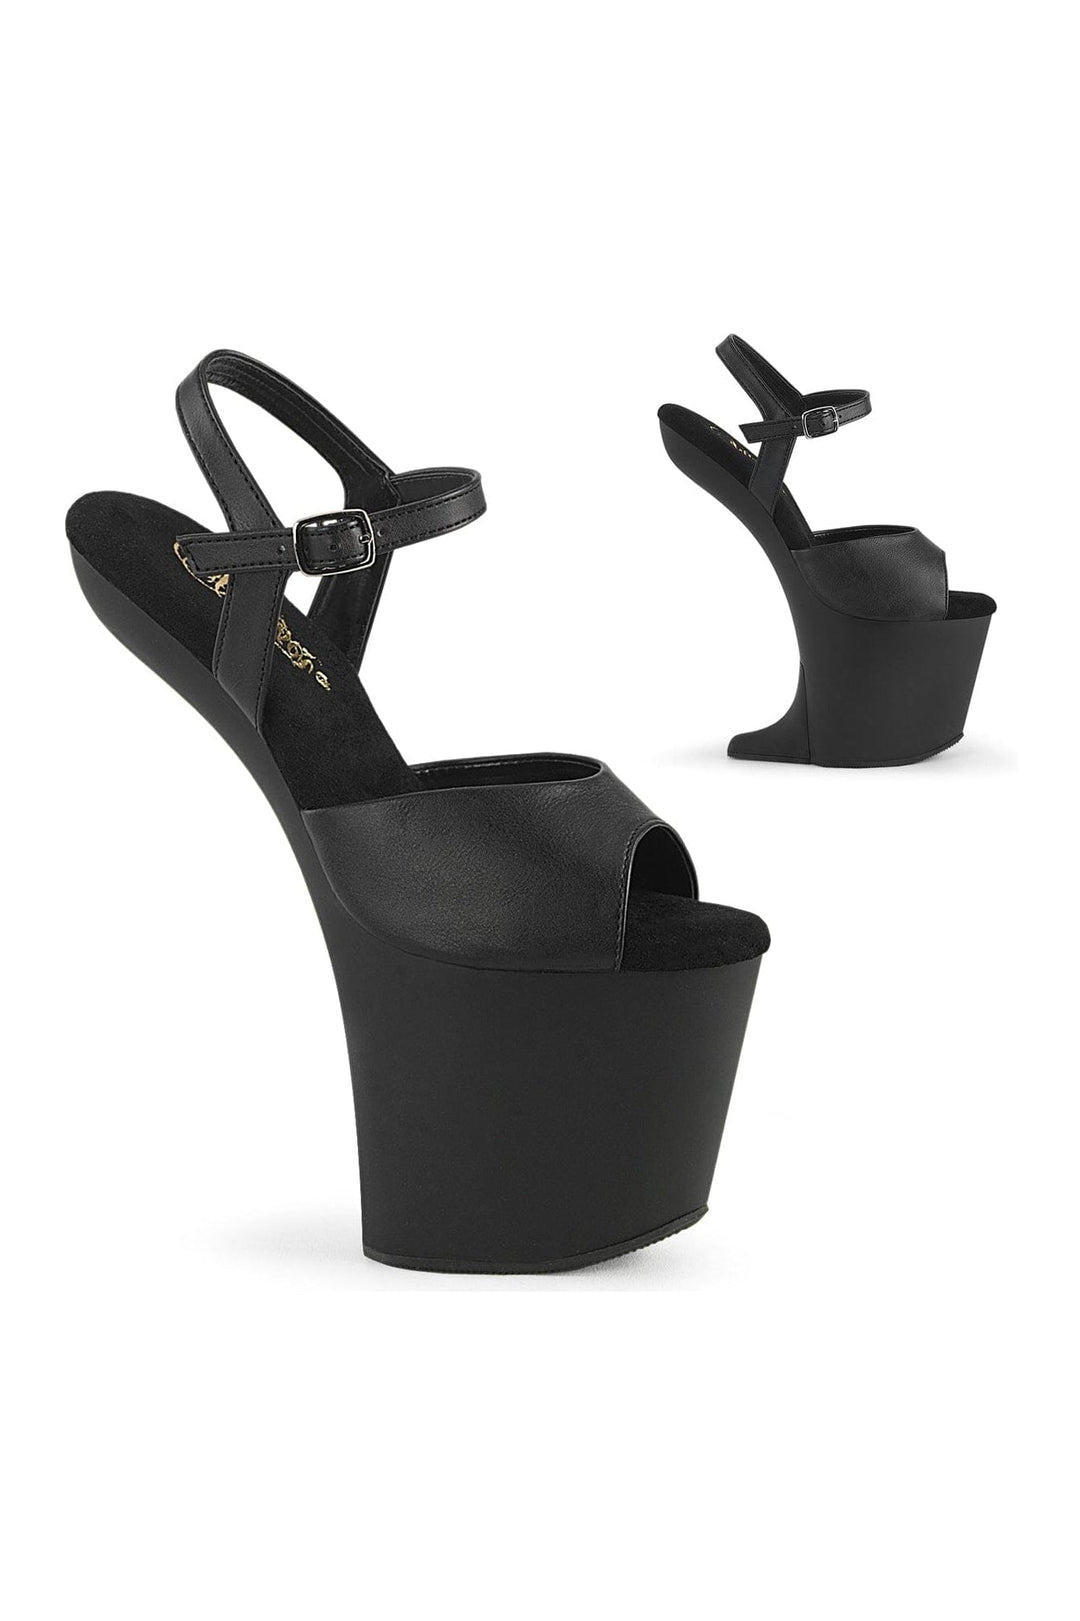 CRAZE-809 Black Faux Leather Sandal-Sandals-Pleaser-Black-10-Faux Leather-SEXYSHOES.COM